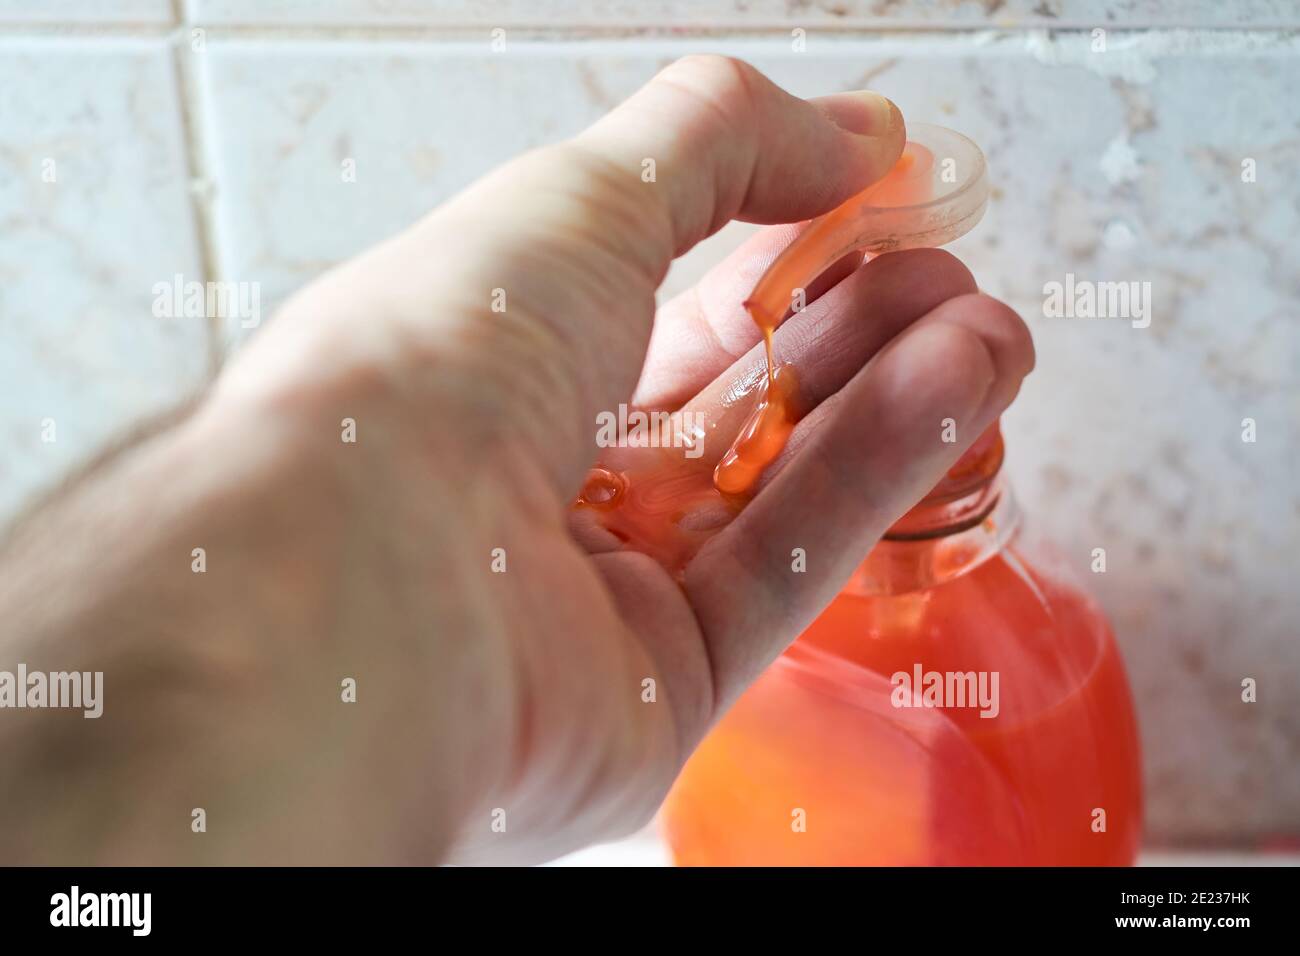 Chiusura della mano maschio con sapone liquido, pressione della pompa dell'erogatore con il pollice e applicazione del flusso di sapone sul palmo. Concetto di igiene personale. Foto Stock